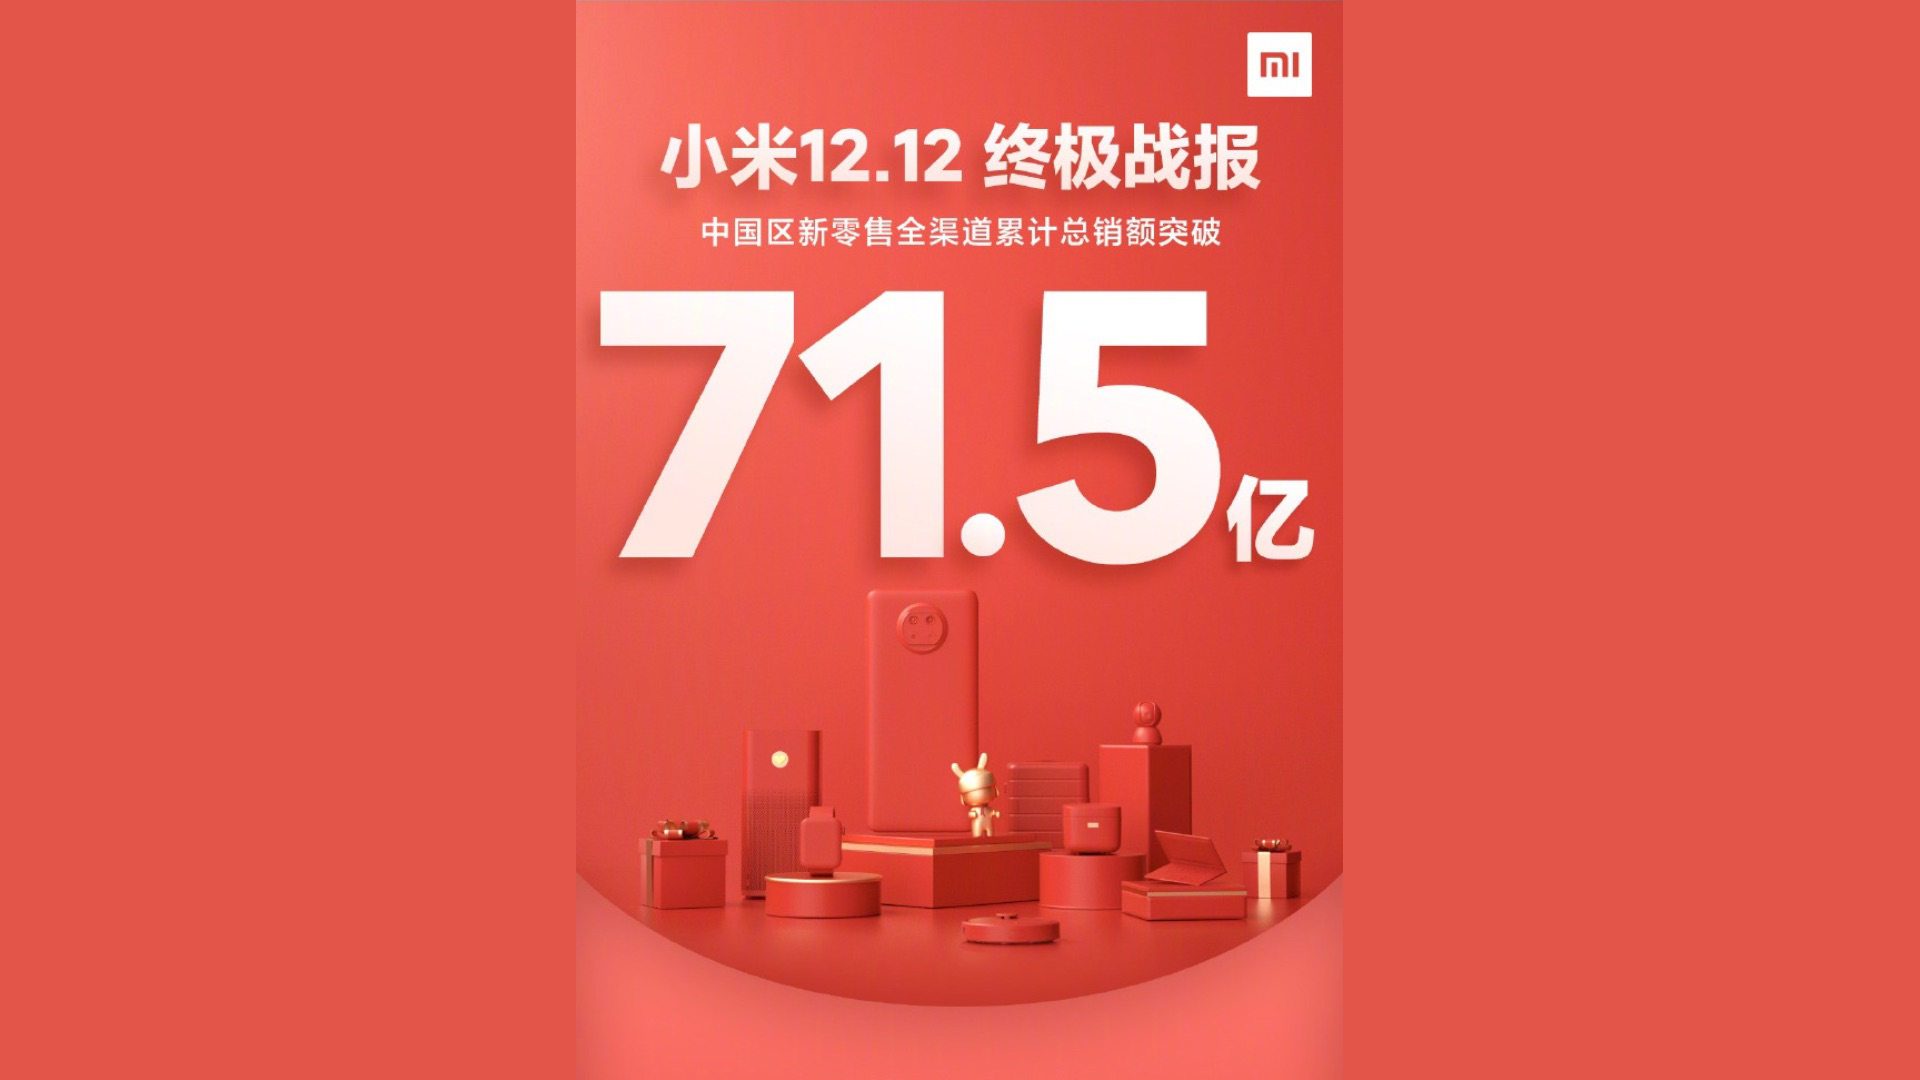 xiaomi vendite 12 dicembre 2020